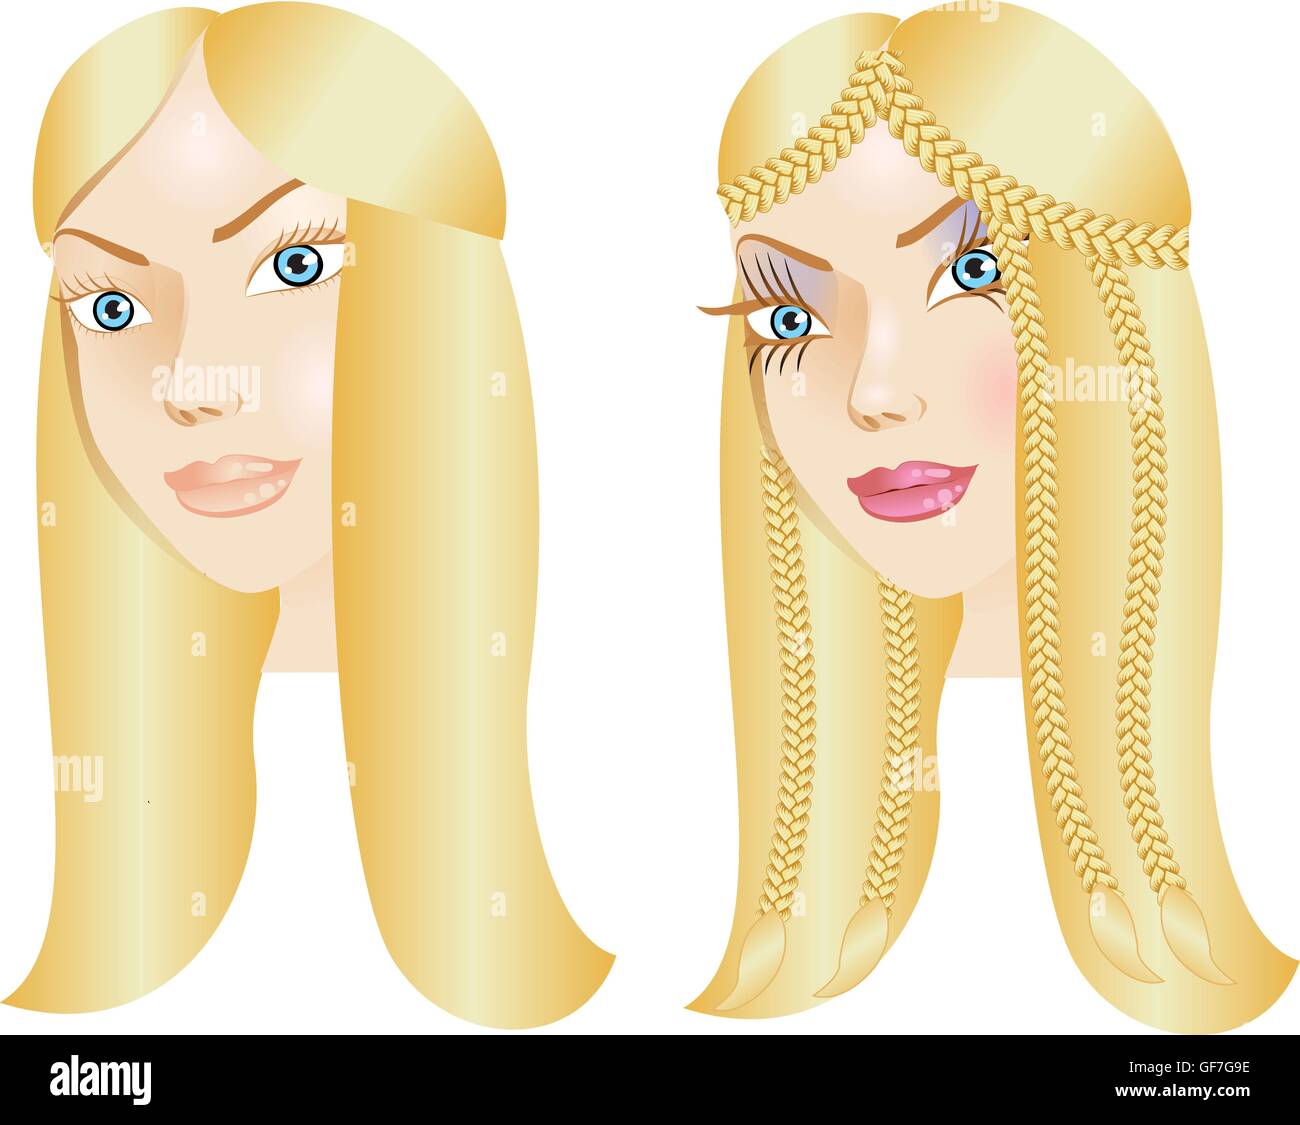 Vektor-Illustration einer Frau mit wenig oder gar kein Make-up, natürliche vor und nach dem Styling. Stock Vektor